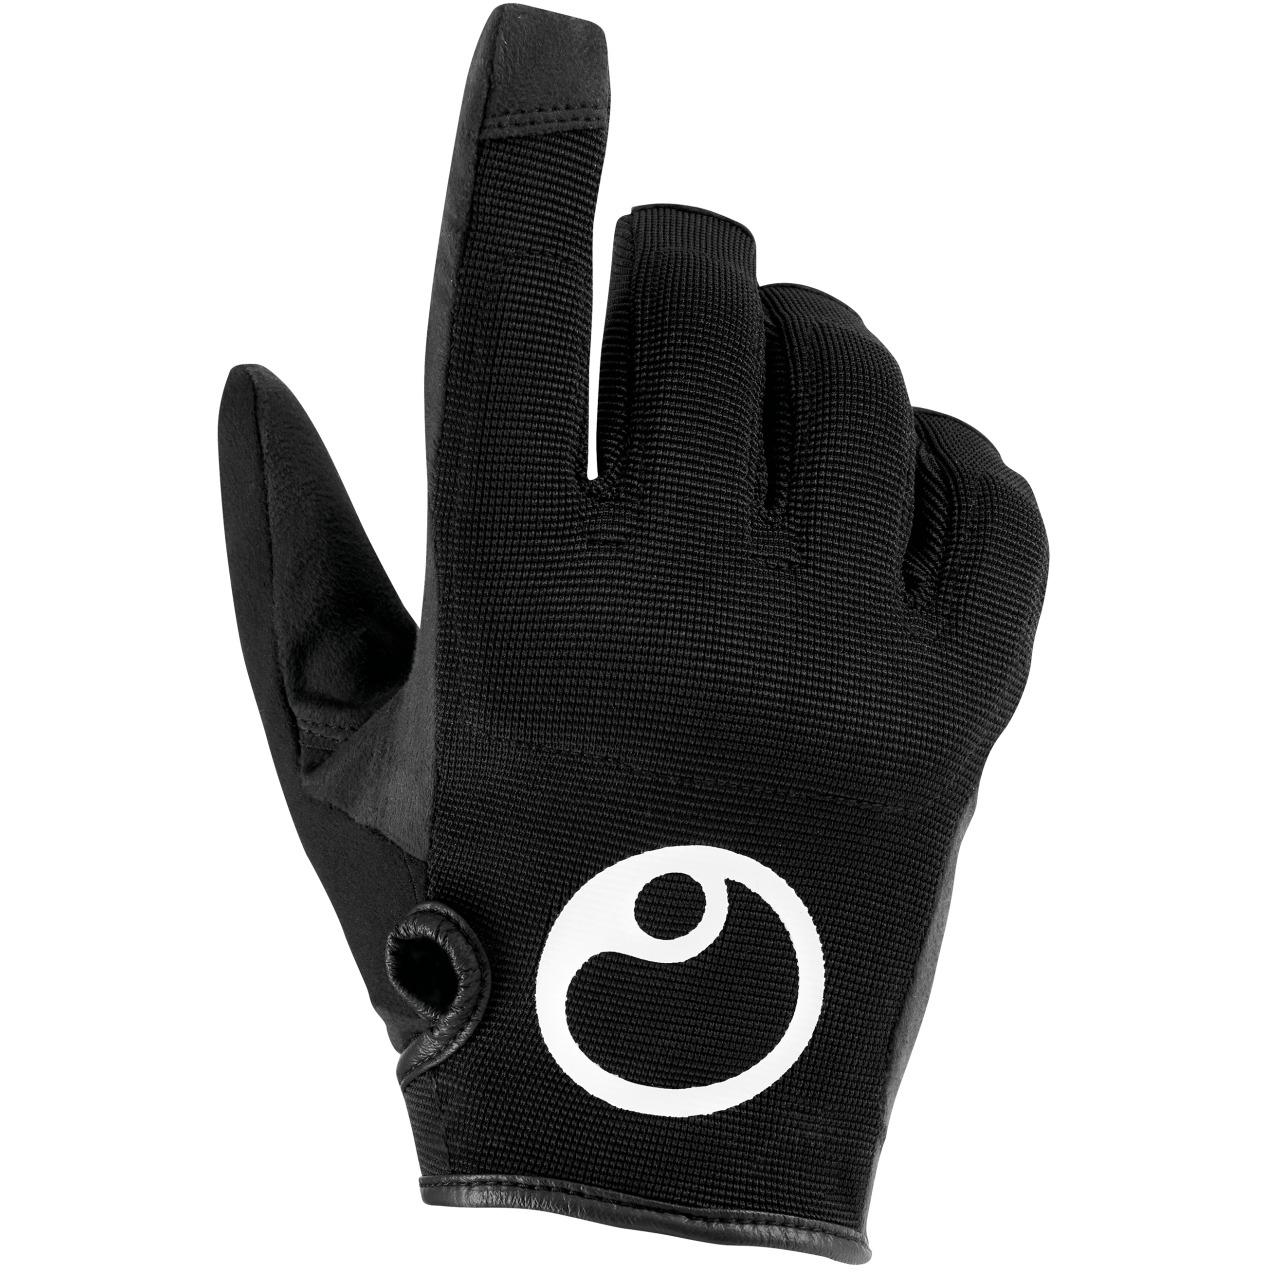 Produktbild von Ergon HE2 Evo Vollfinger Handschuh - black